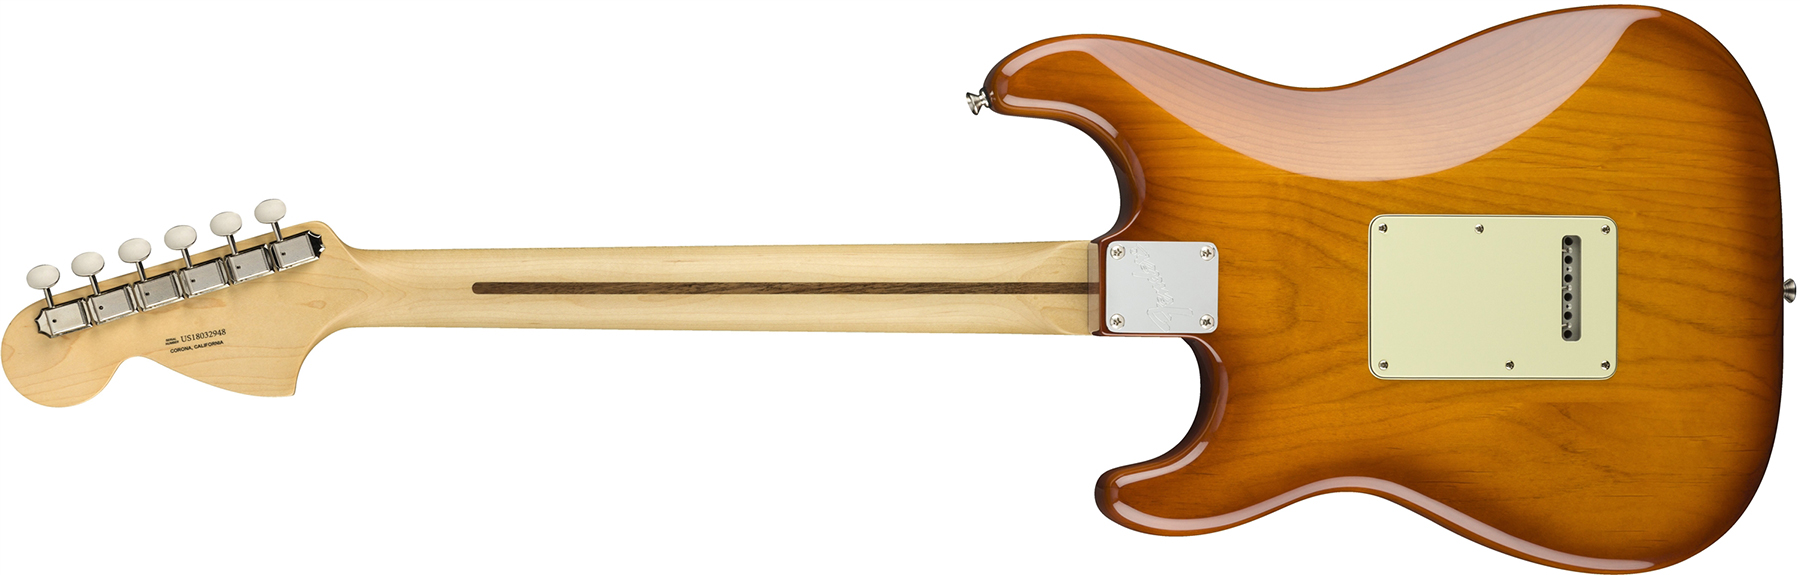 Fender Strat American Performer Usa Sss Rw - Honey Burst - Guitare Électrique Forme Str - Variation 4